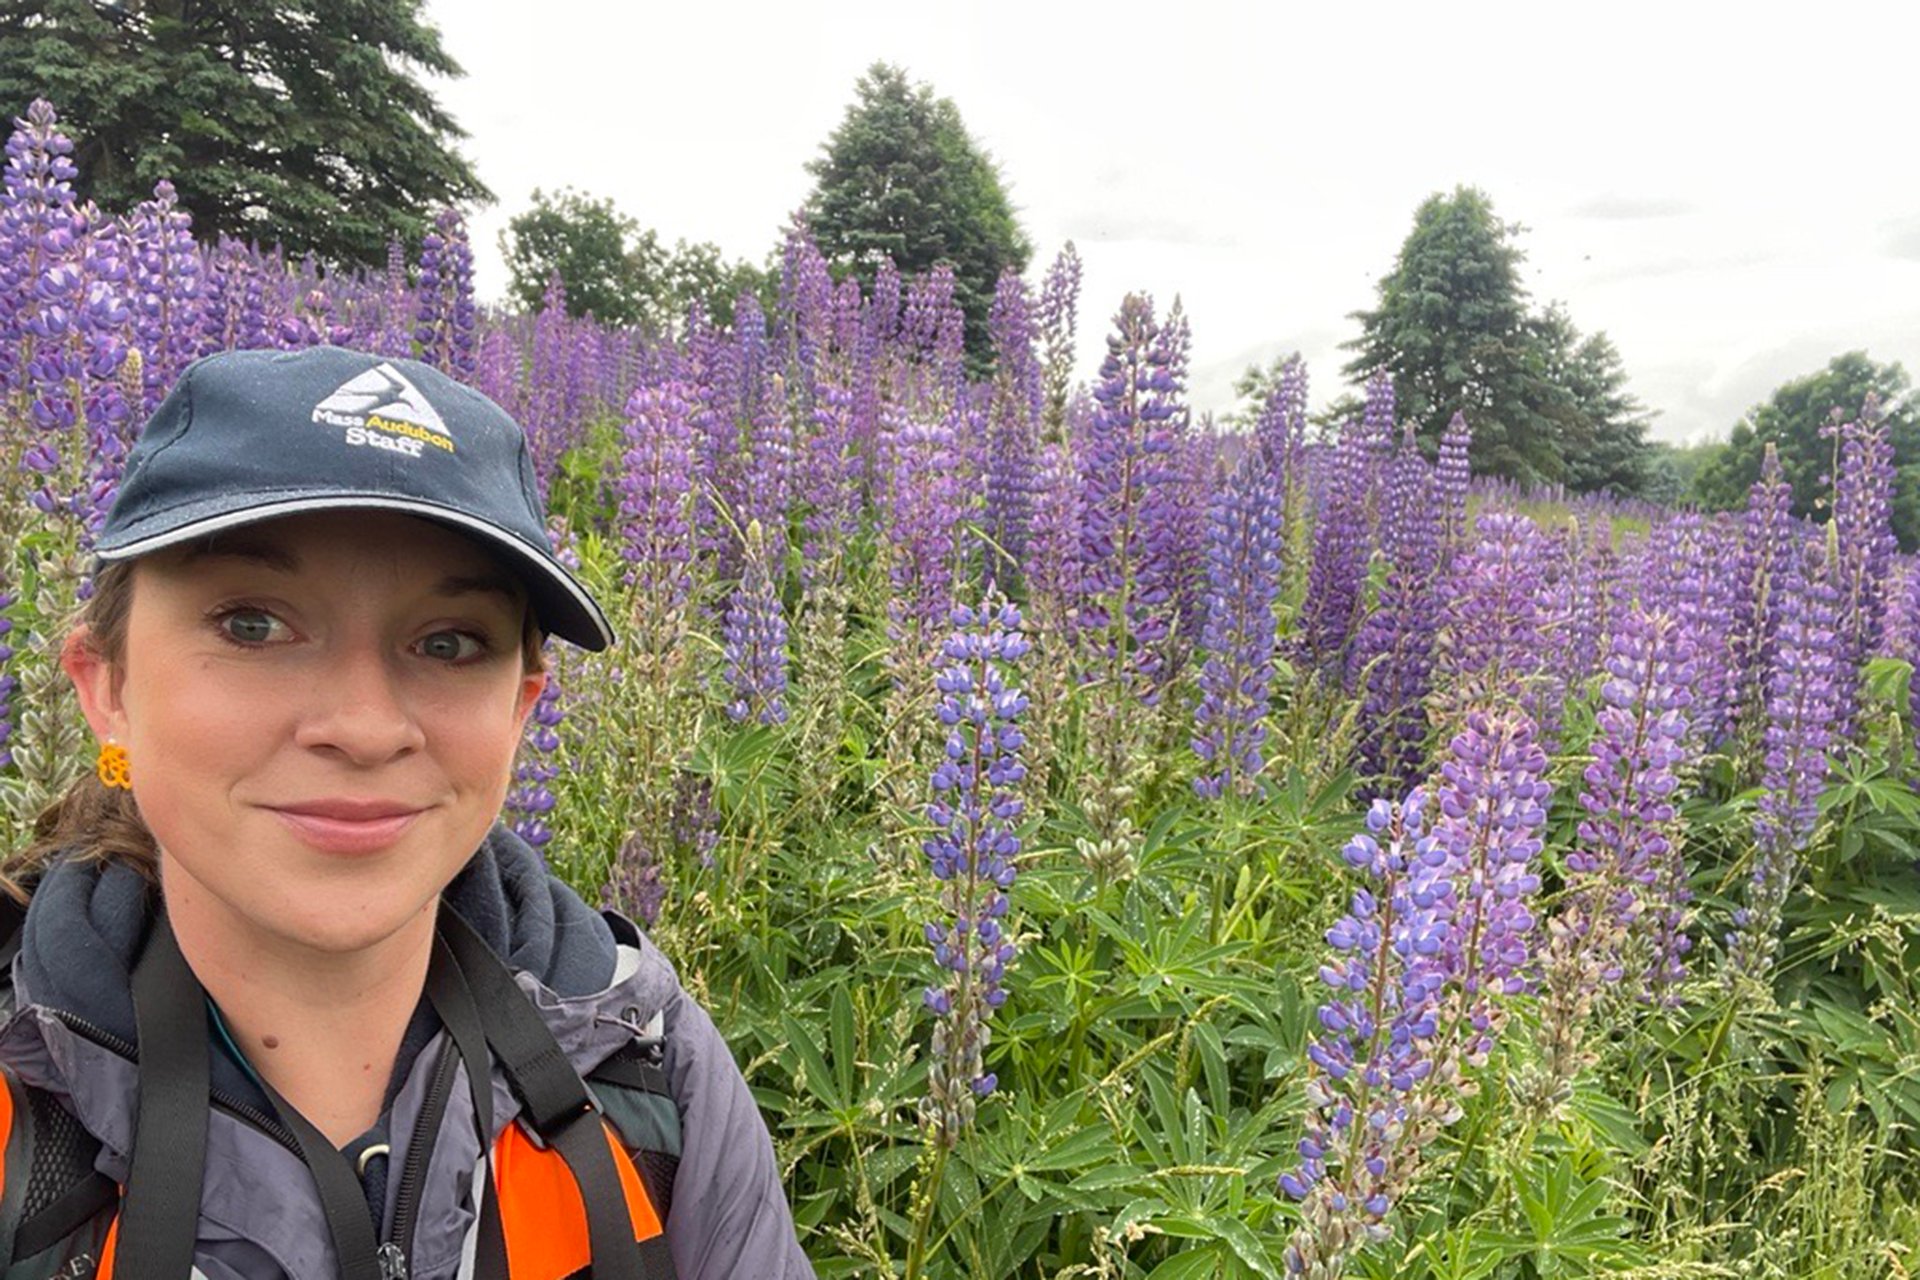 Nicole Marcotte wearing a blue cap, taking a selfie in front of a field of purple flowers